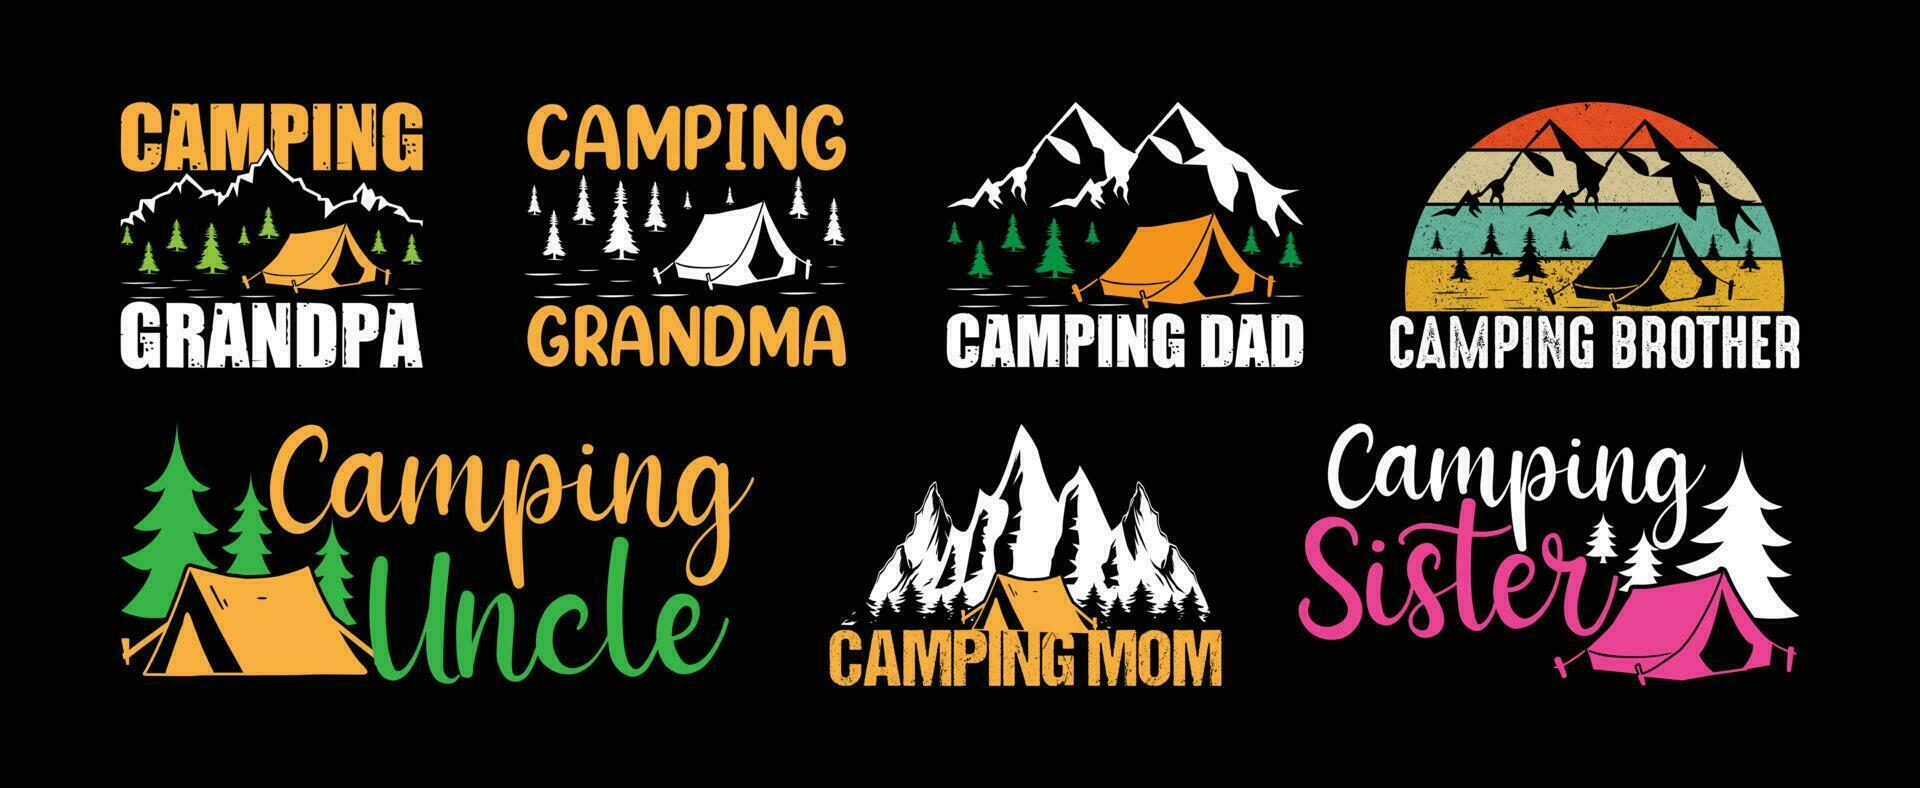 acampamento t camisa Projeto pacote, citações sobre acampamento, aventura, ar livre, acampamento t camisa, caminhada, acampamento tipografia t camisa Projeto coleção vetor